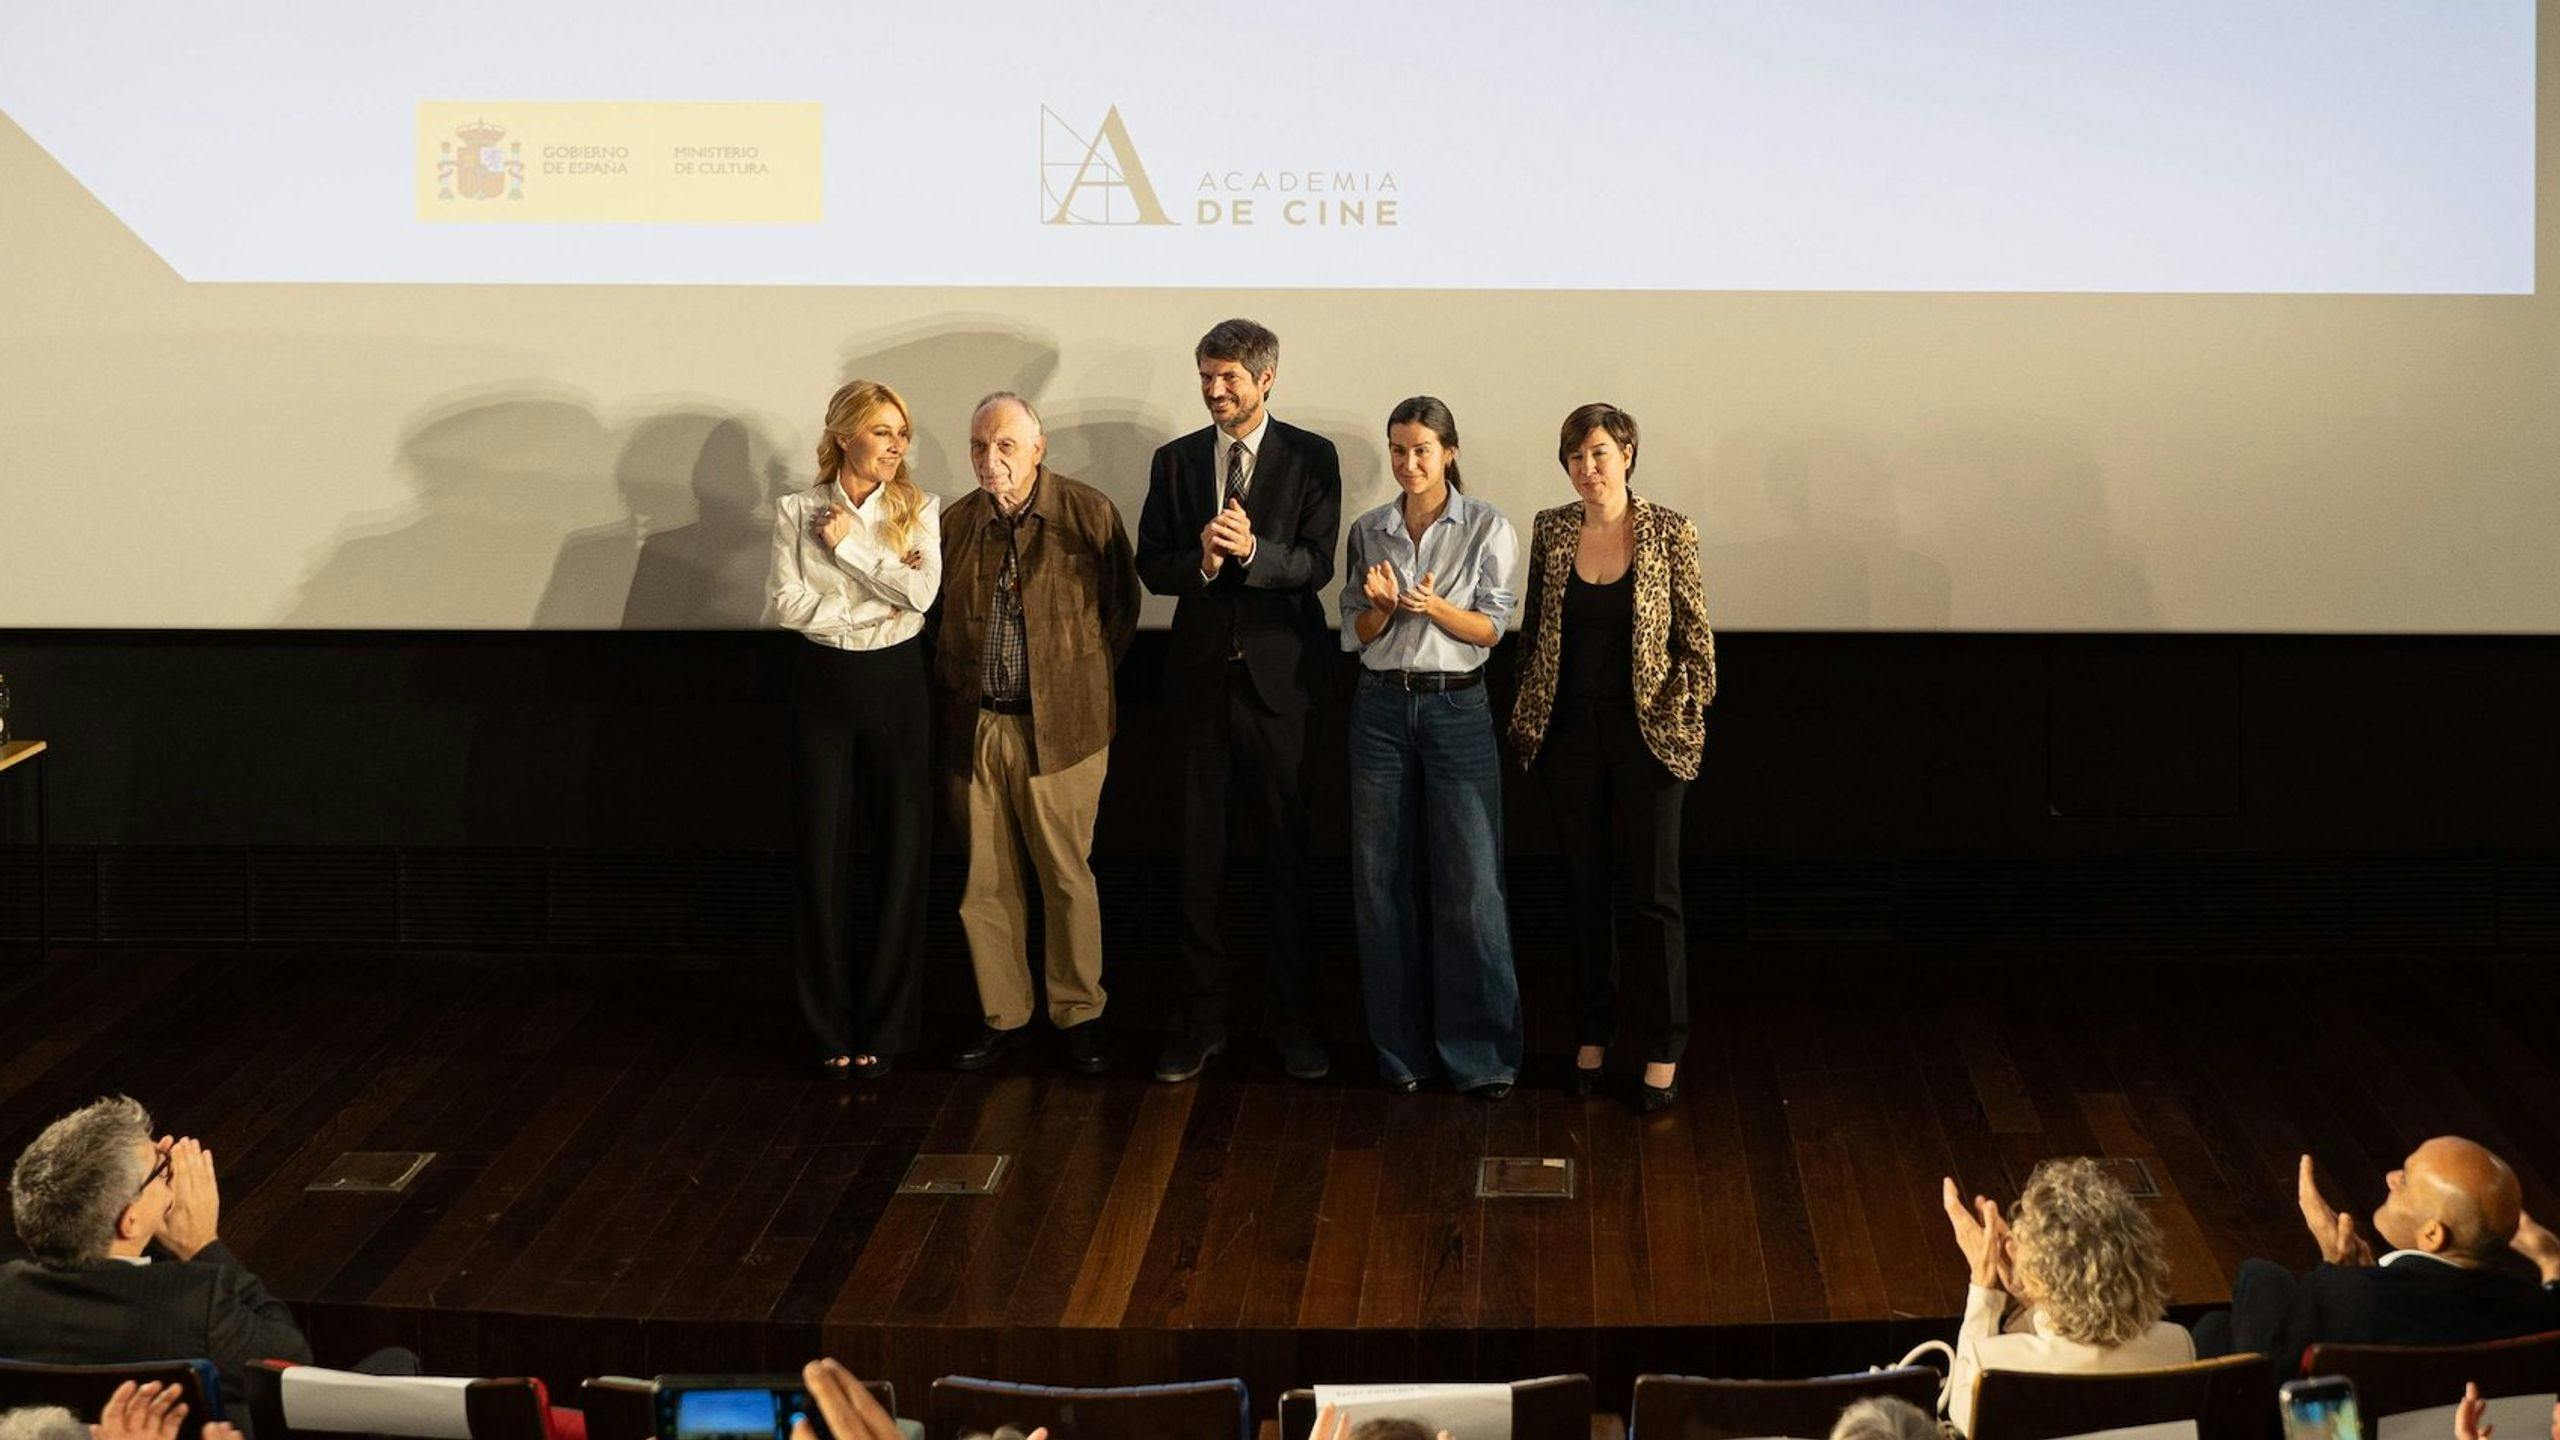 Izqda. dcha: Cayetana Guillén Cuervo, Fernando Méndez-Leite, Ernest Urtasun, Mar Rojo y Virginia Yagüe en la presentación de la Academia